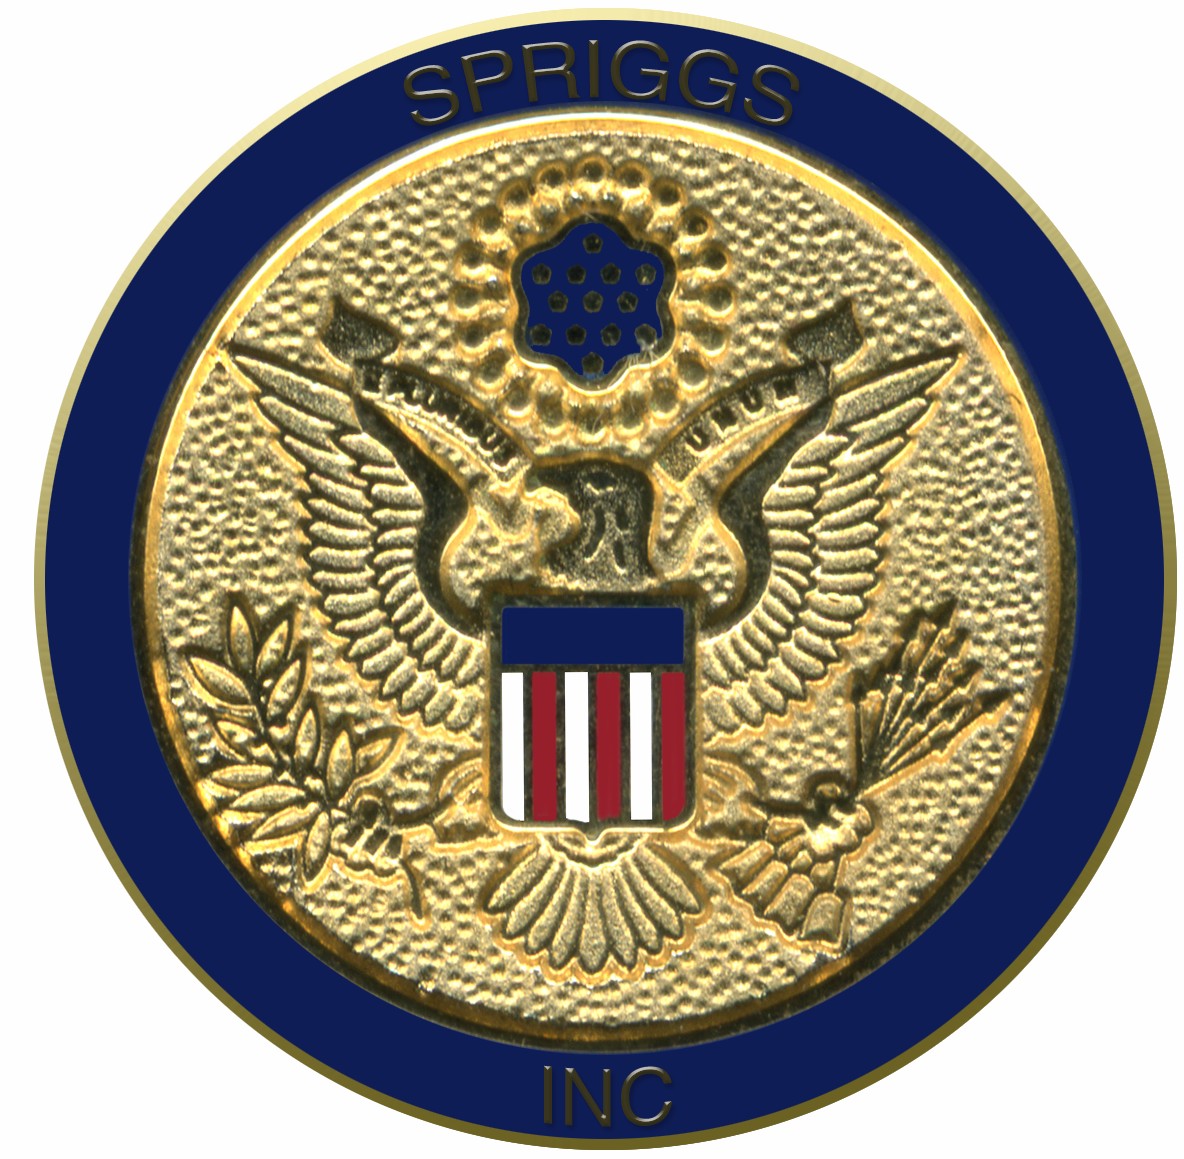 Spriggs Security & Investigations Inc.